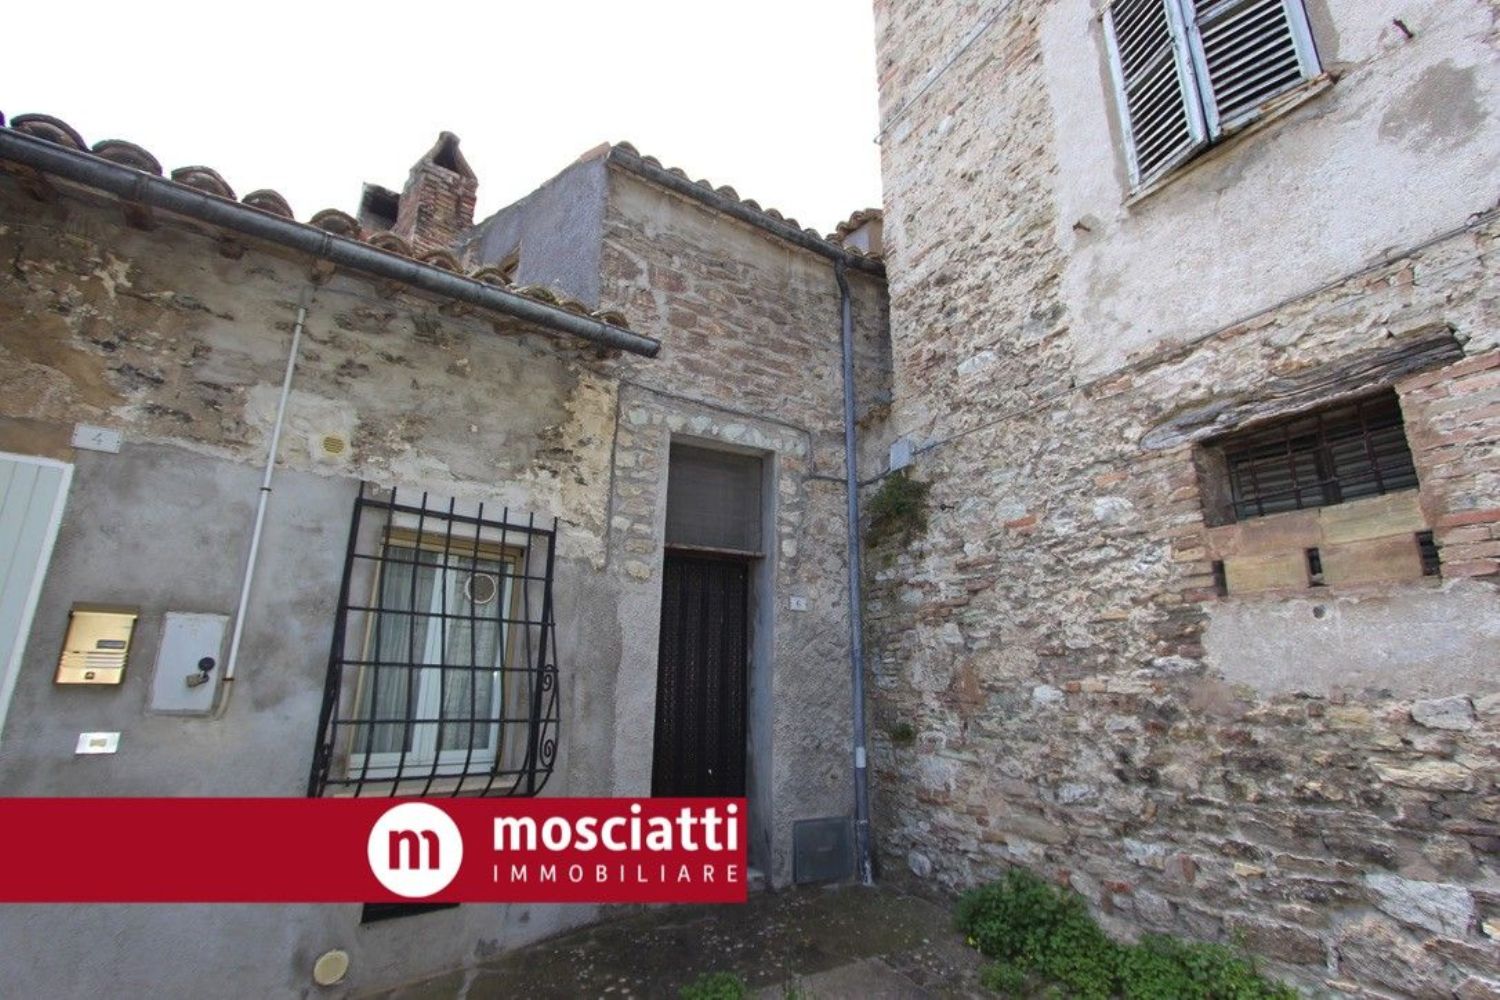 Villa in vendita a Esanatoglia, 4 locali, prezzo € 39.000 | PortaleAgenzieImmobiliari.it